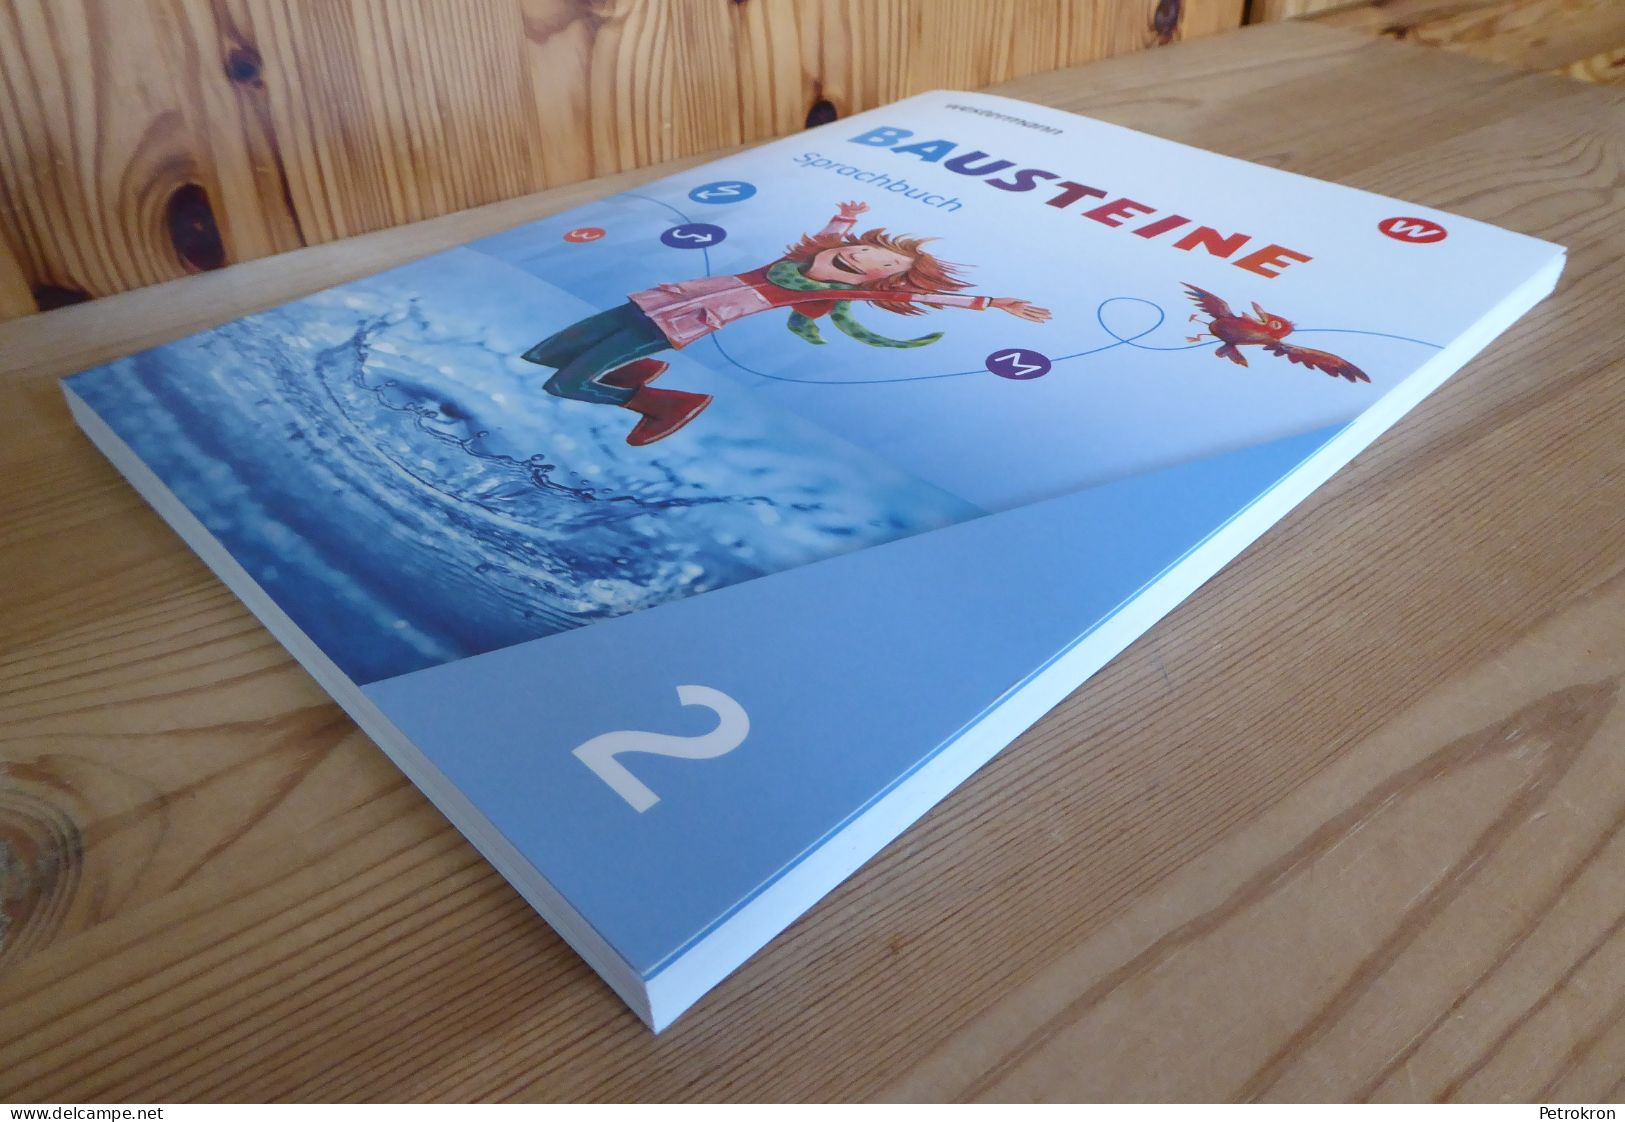 Westermann Bausteine Sprachbuch Klasse 2 Grundschule Deutsch 2020 Mit Beiheft - Schulbücher